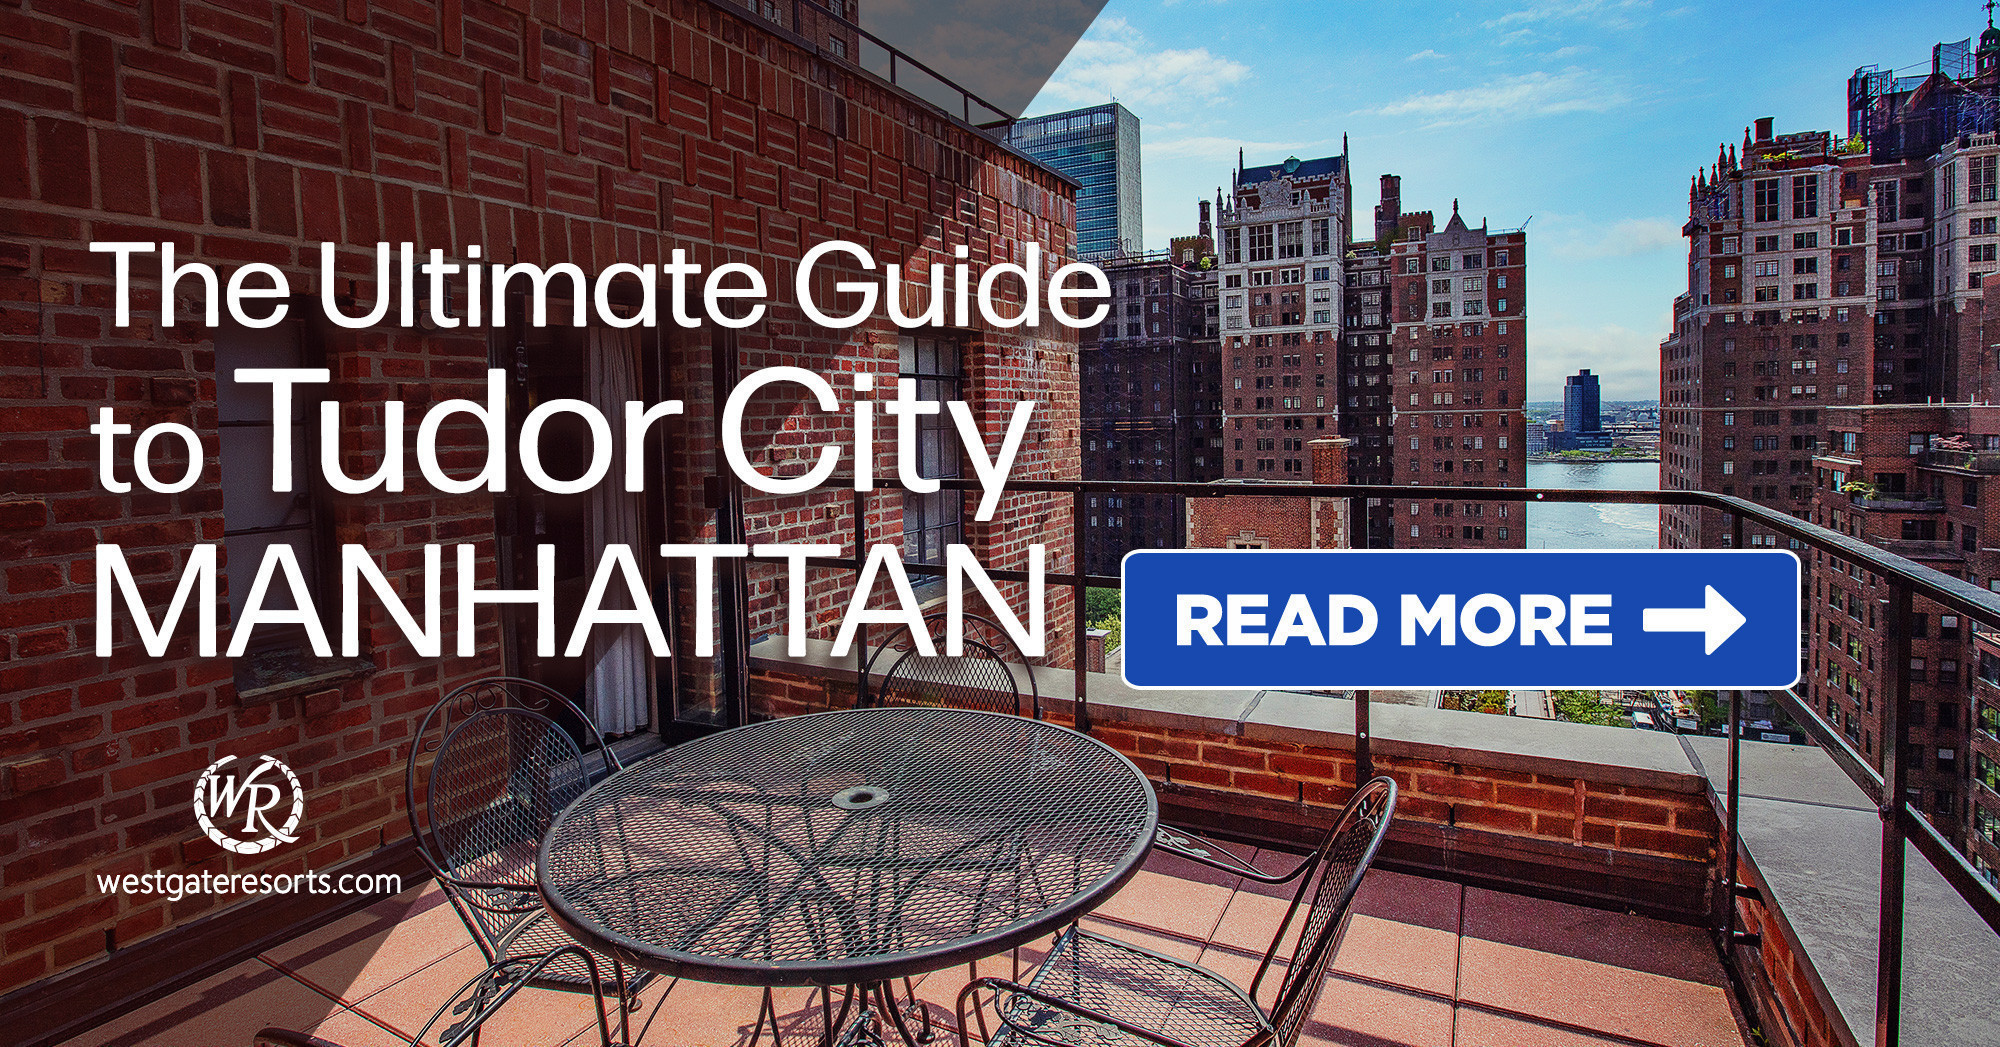 The Ultimate Guide to Tudor City Manhattan!